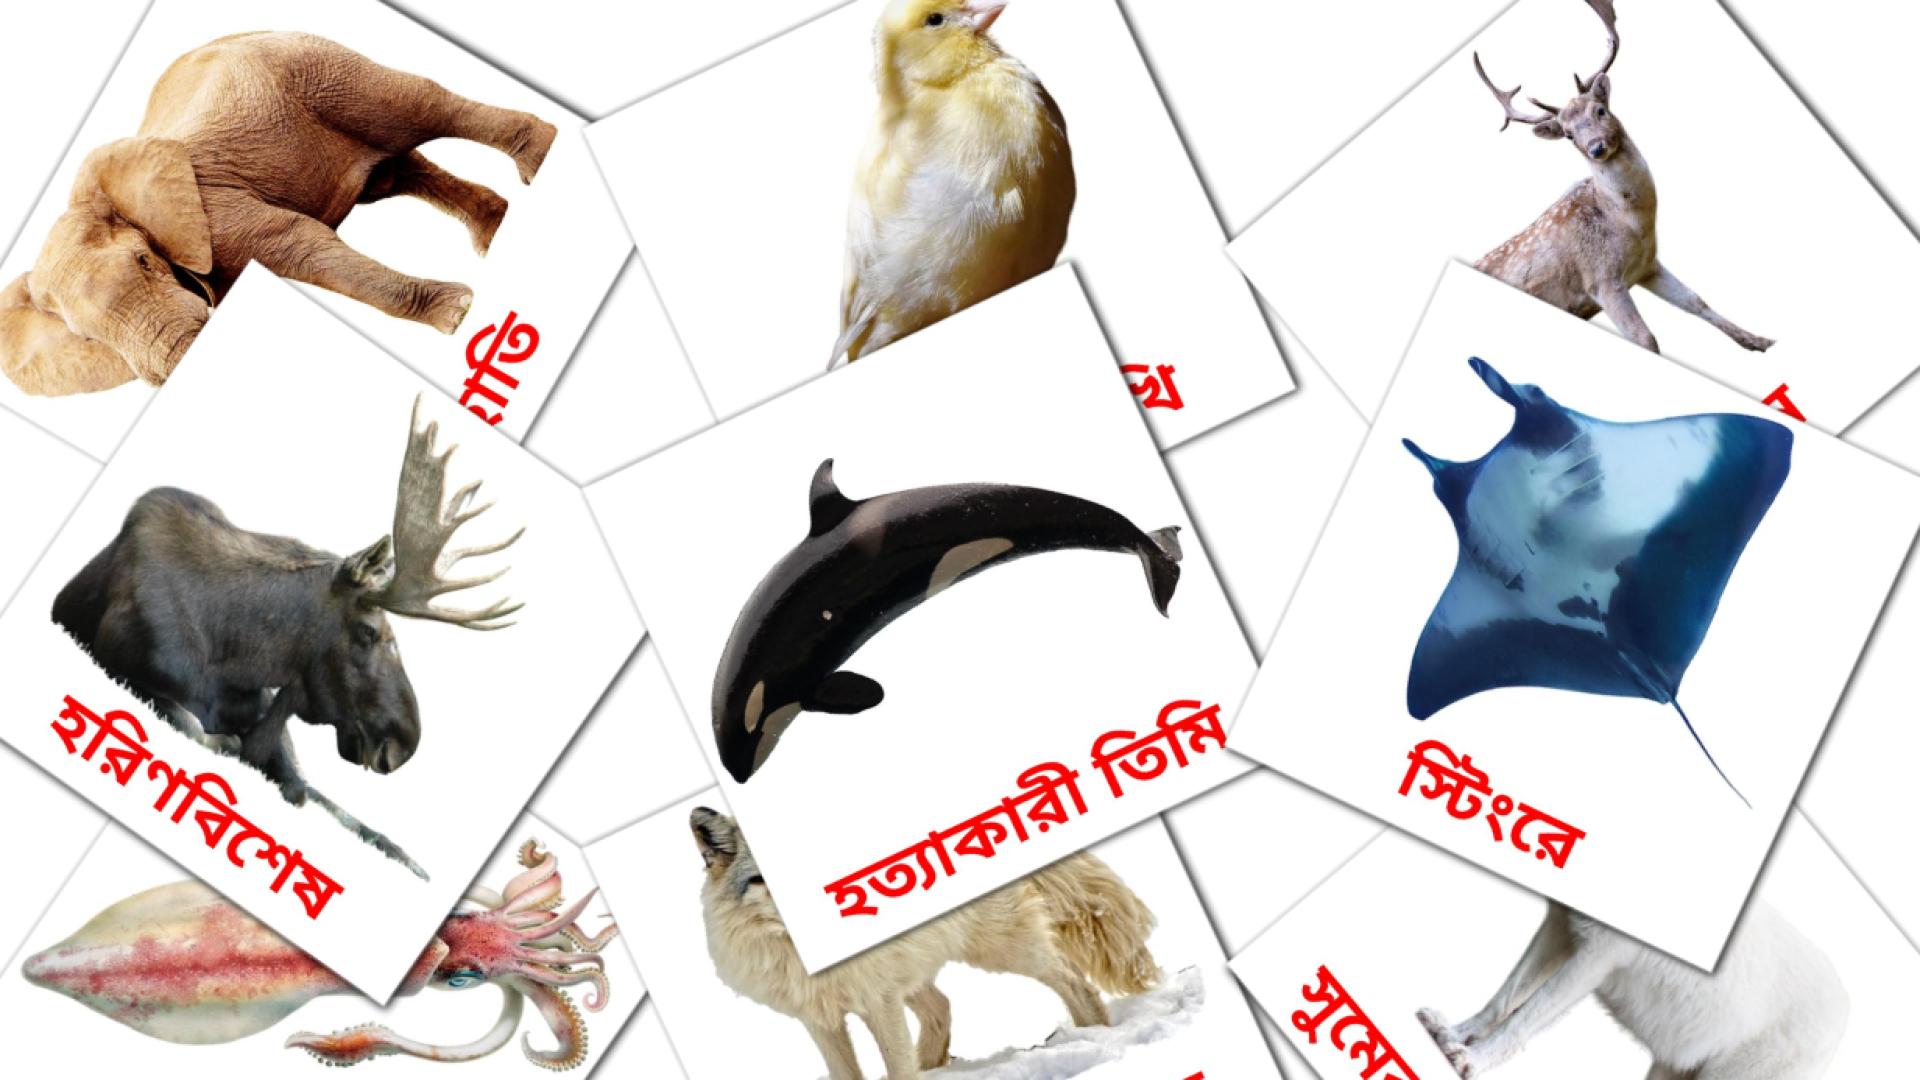 Bengalisch পশুe Vokabelkarteikarten